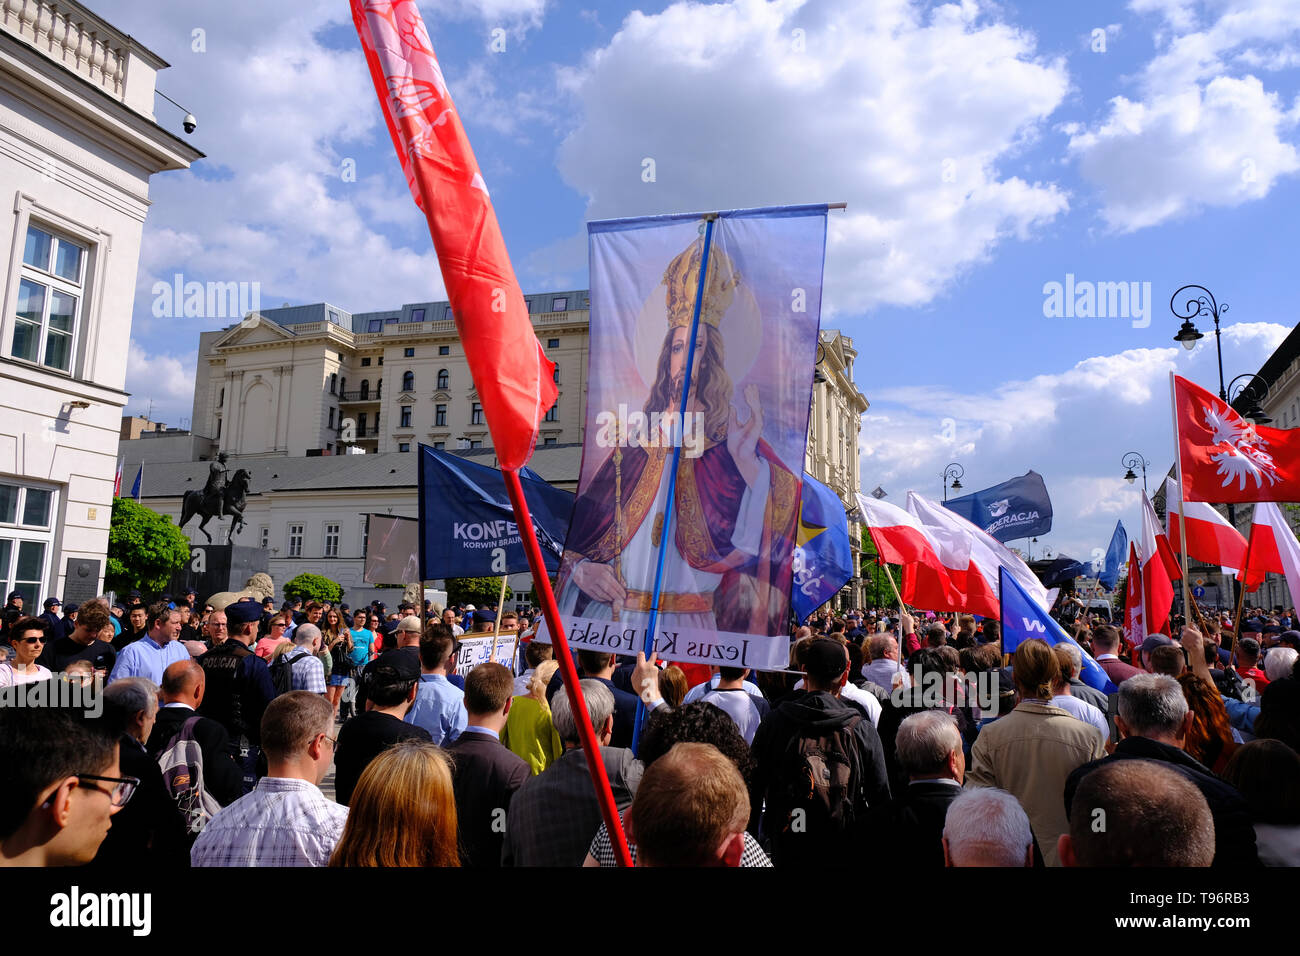 Anti EU-Demonstration von Rechtsextremen Gruppen organisiert, auf dem 15. Jubiläum der Beitritt Polens zur EU, vor 15 Jahren in Polen, Warschau, Polen der EU beigetreten sind Stockfoto